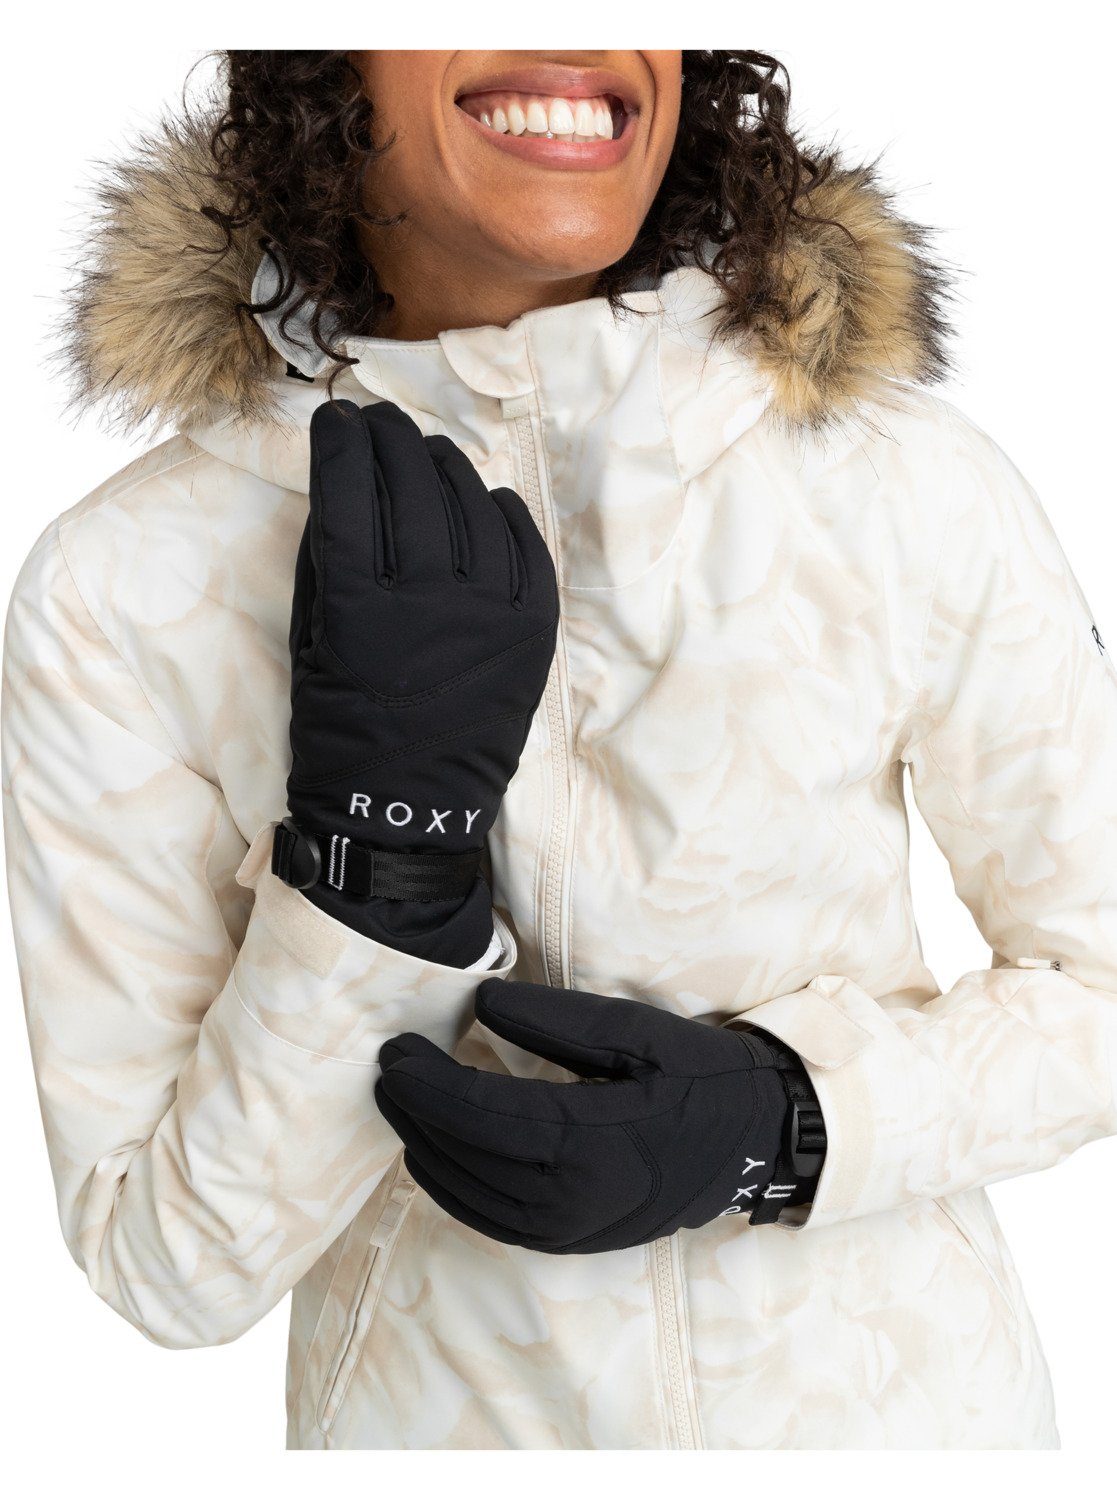 Roxy Snowboardhandschuhe ROXY Jetty True Black | Snowboardhandschuhe